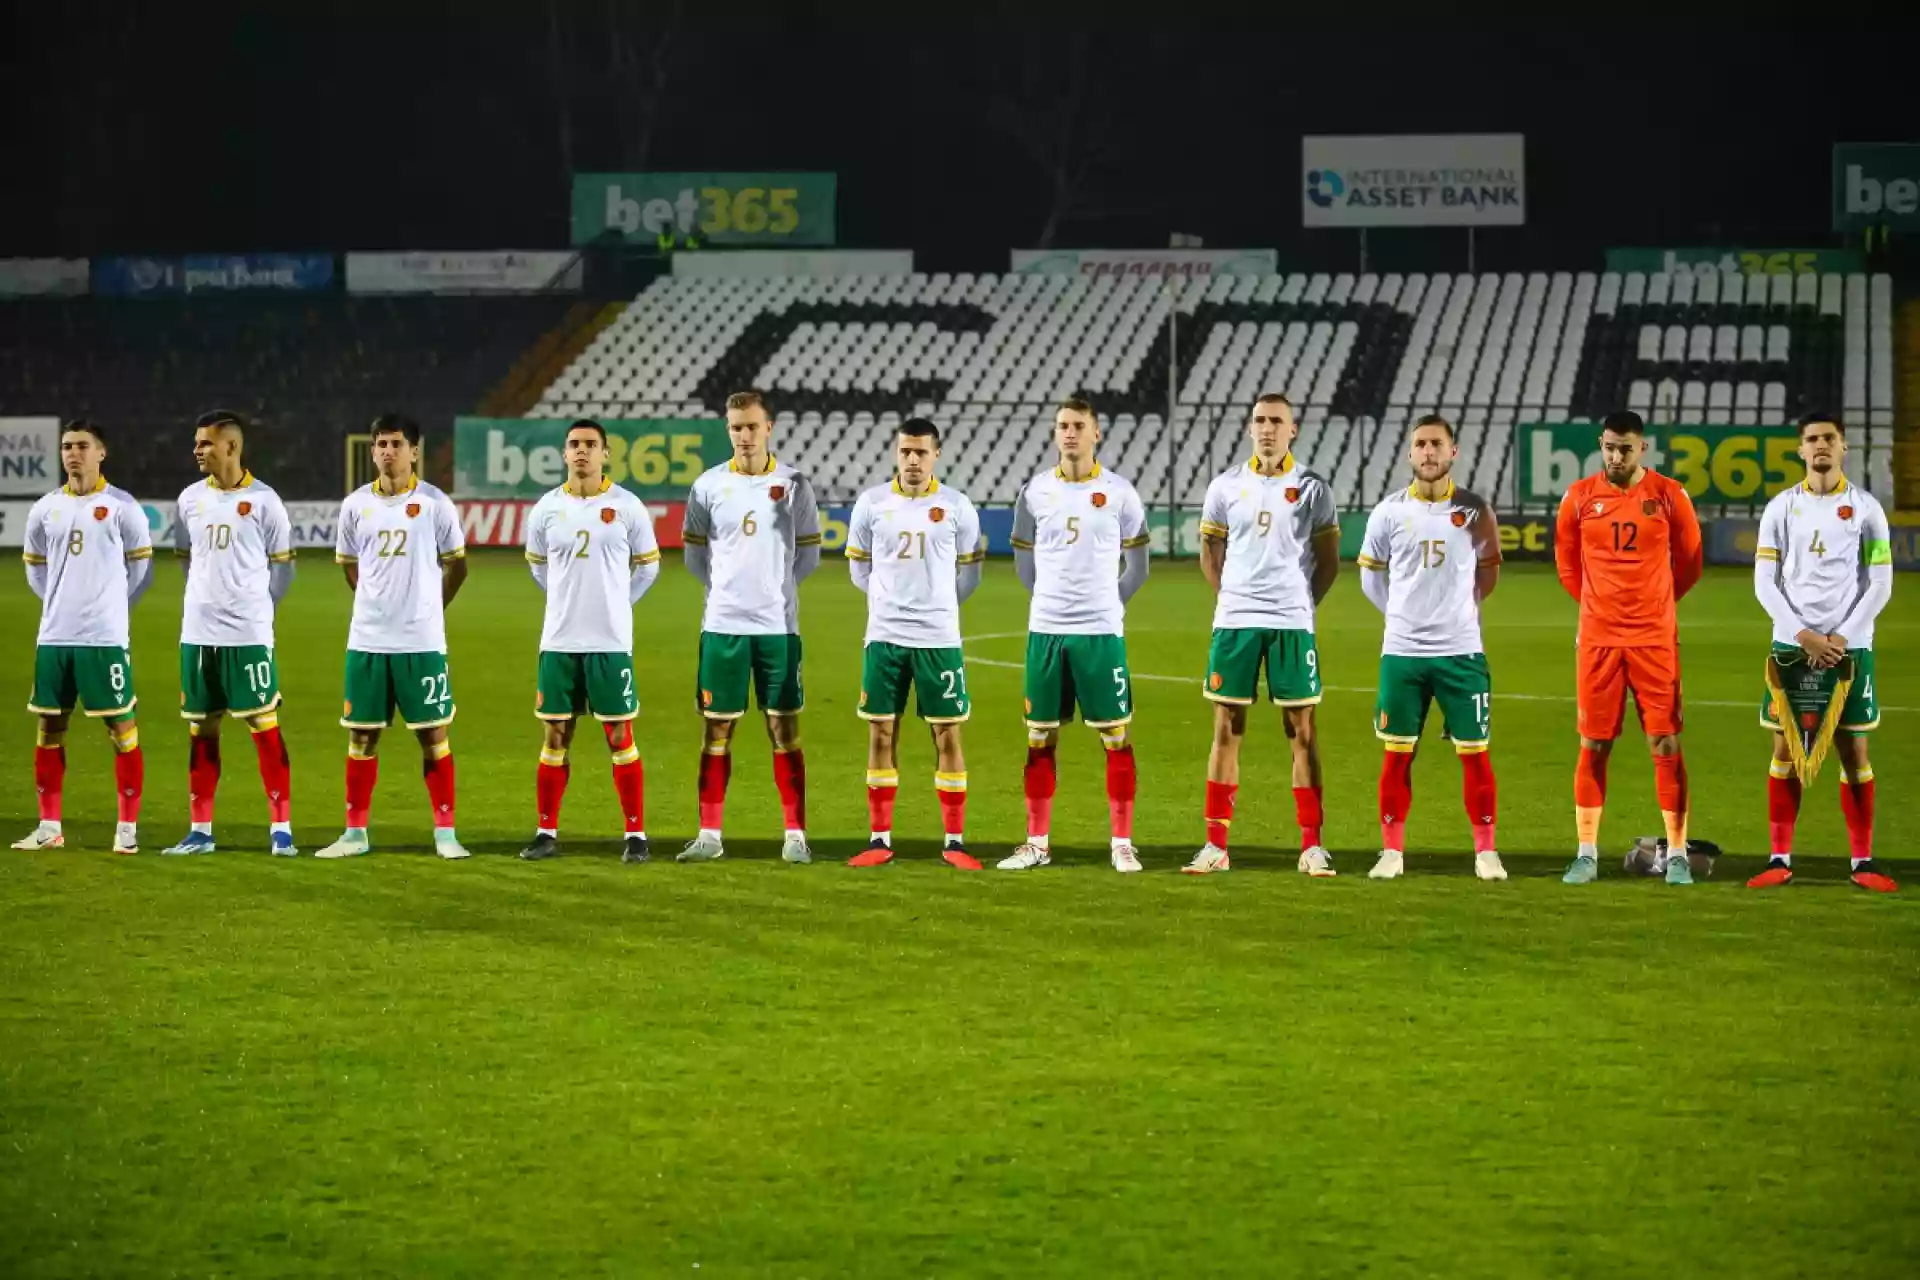 България U21 се представя достойно напоследък